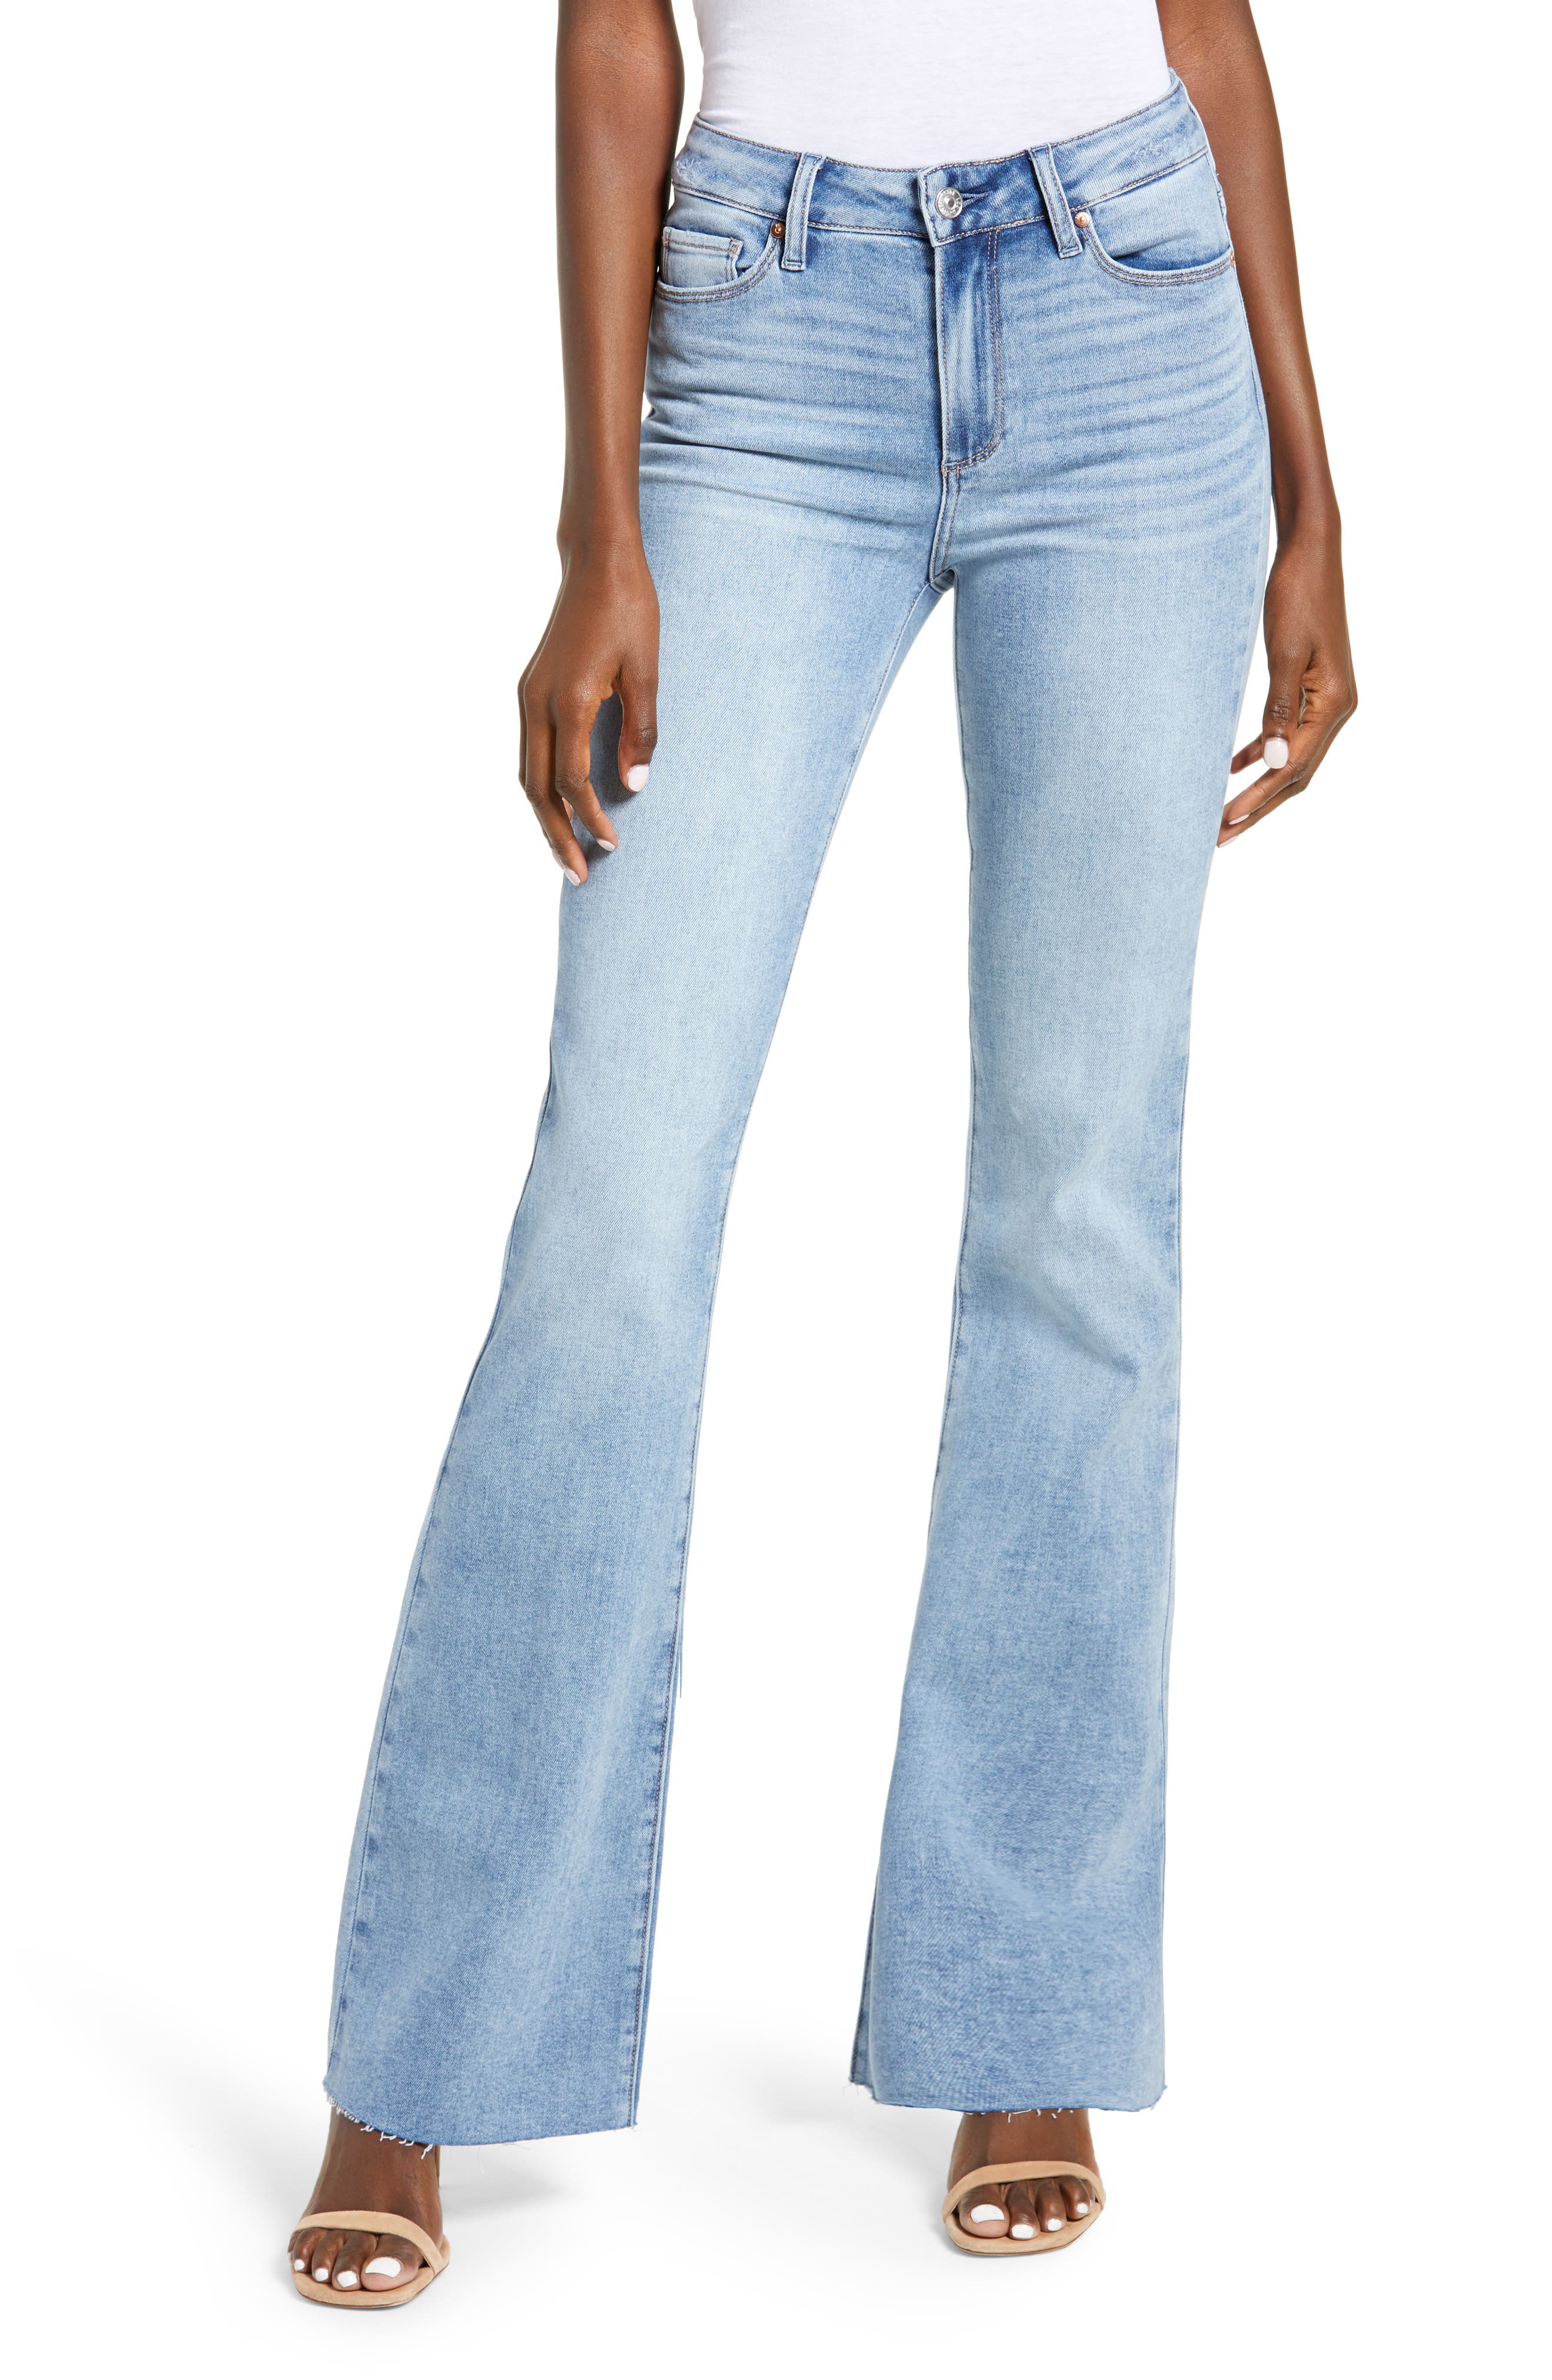 paige laurel canyon jeans